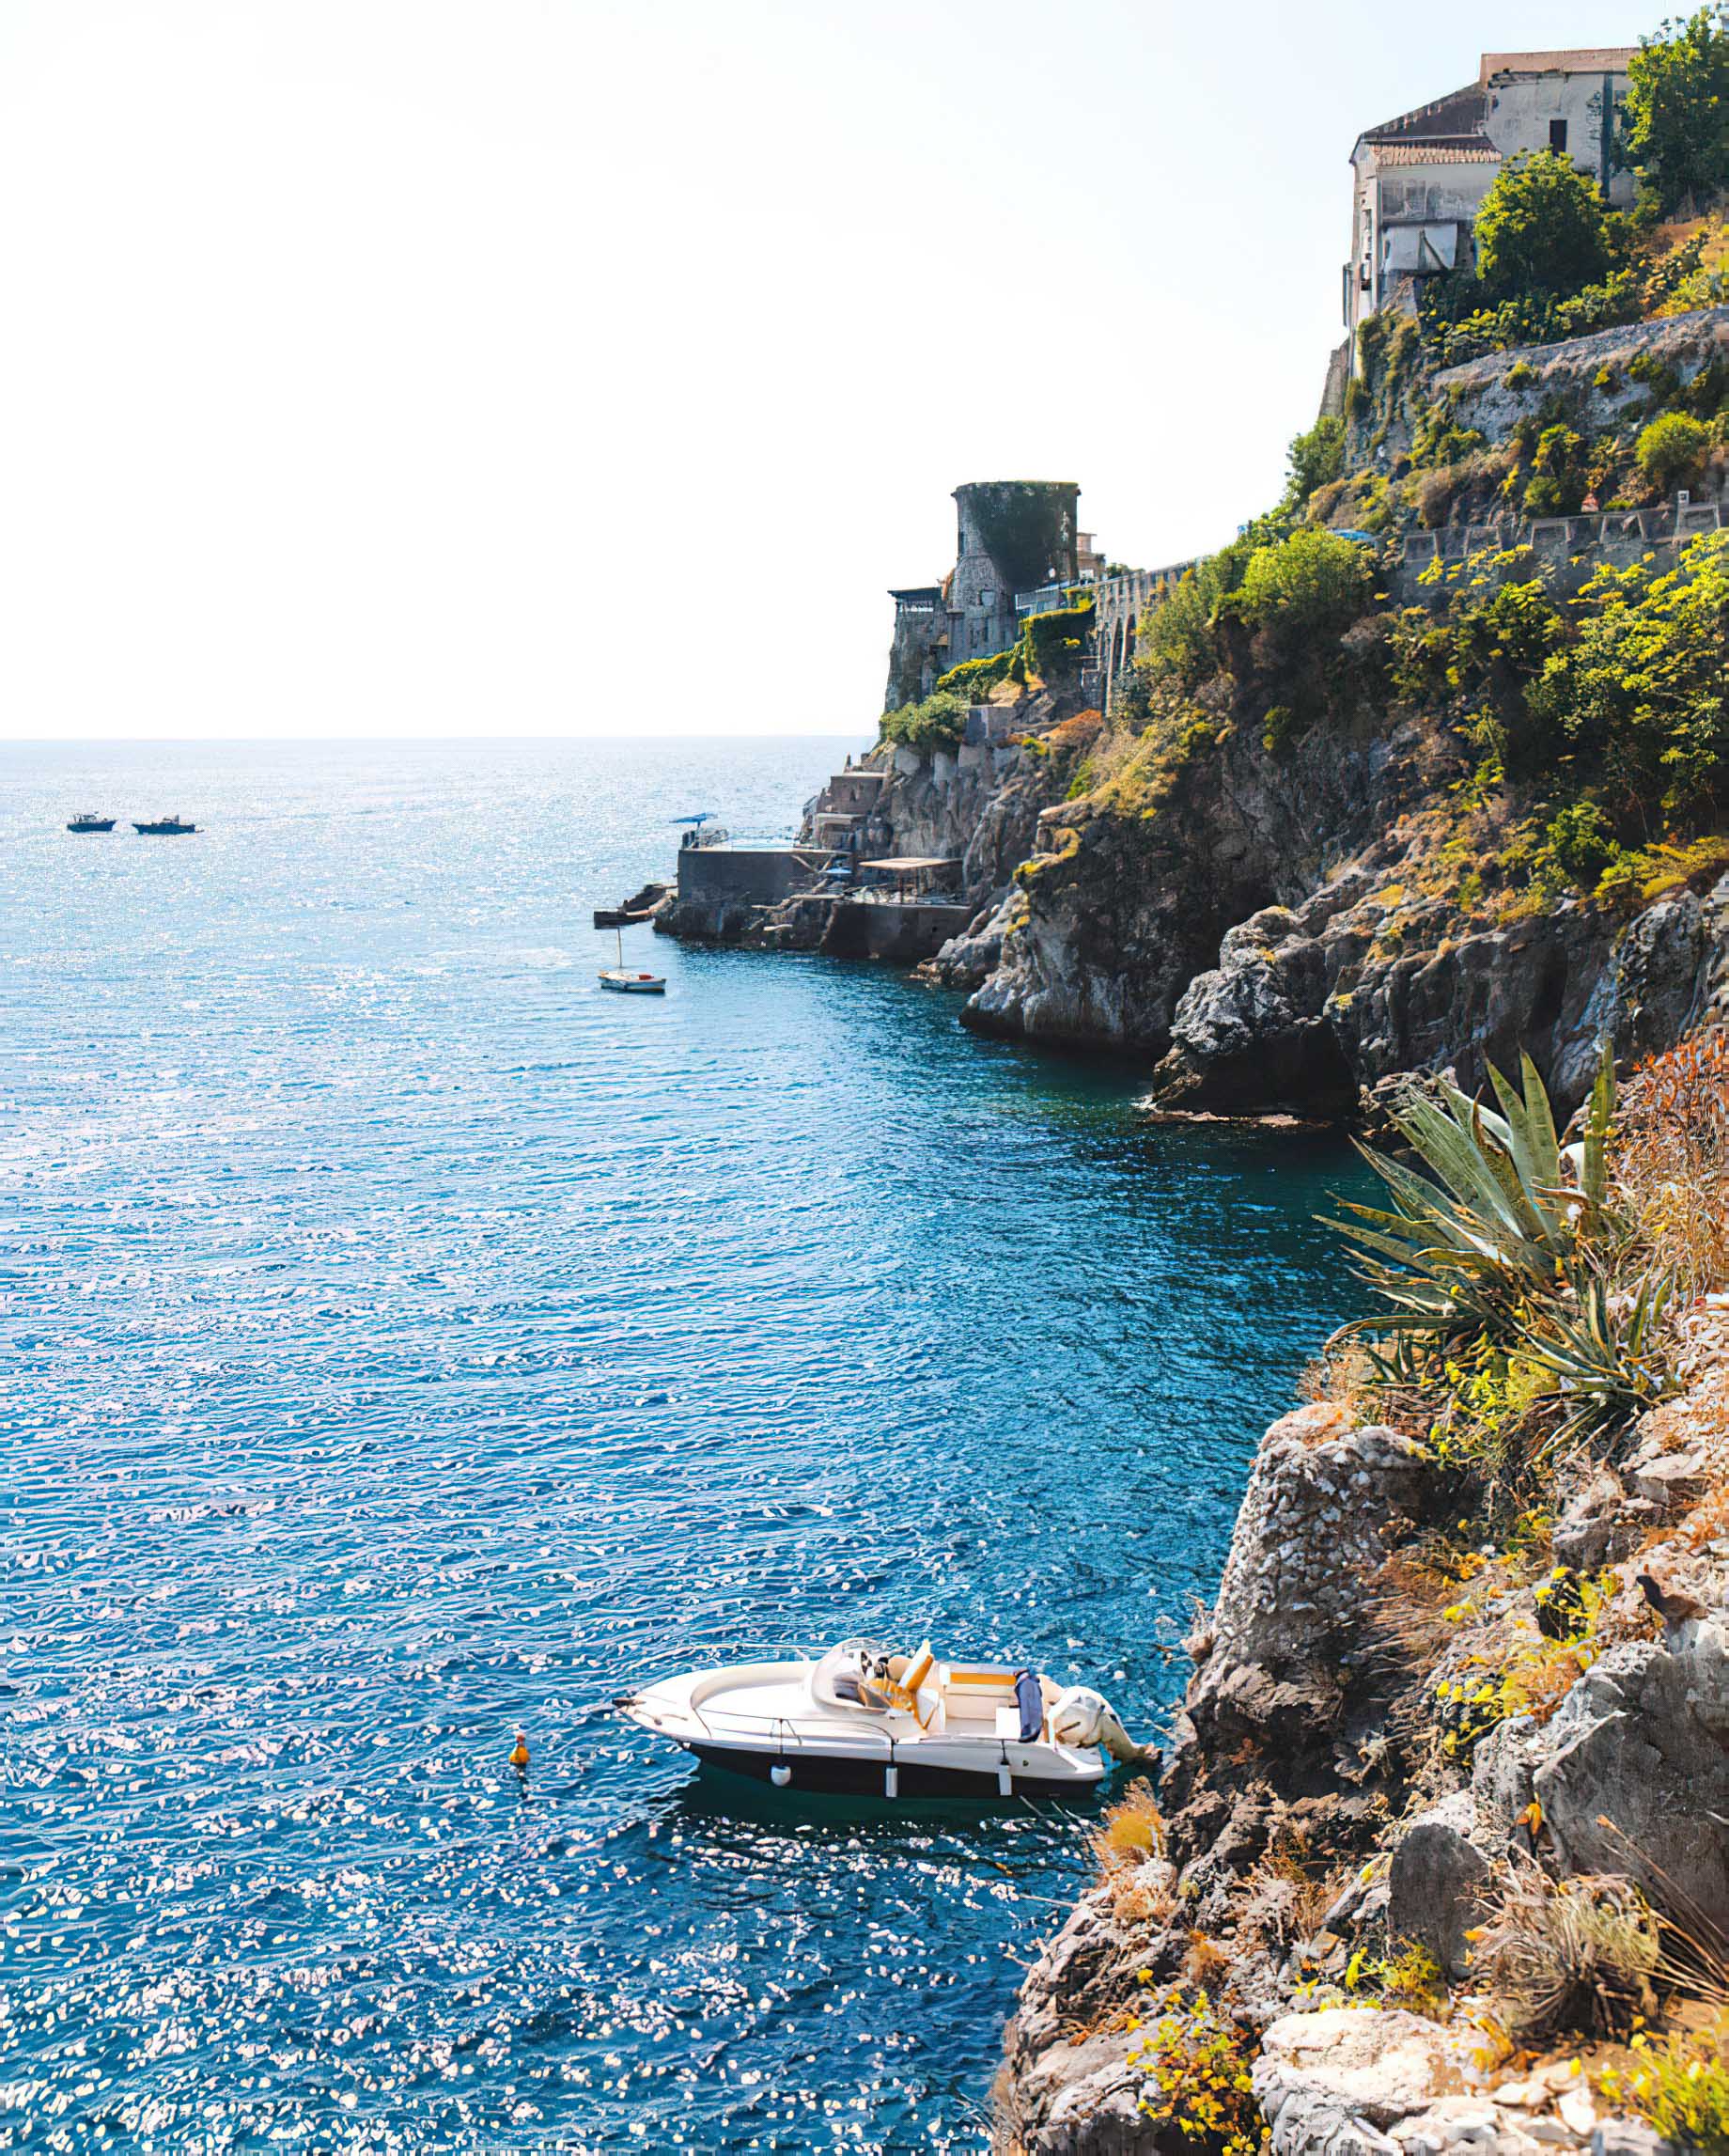 Caruso, A Belmond Hotel, Amalfi Coast – Ravello, Italy – Amalfi Coast Boating